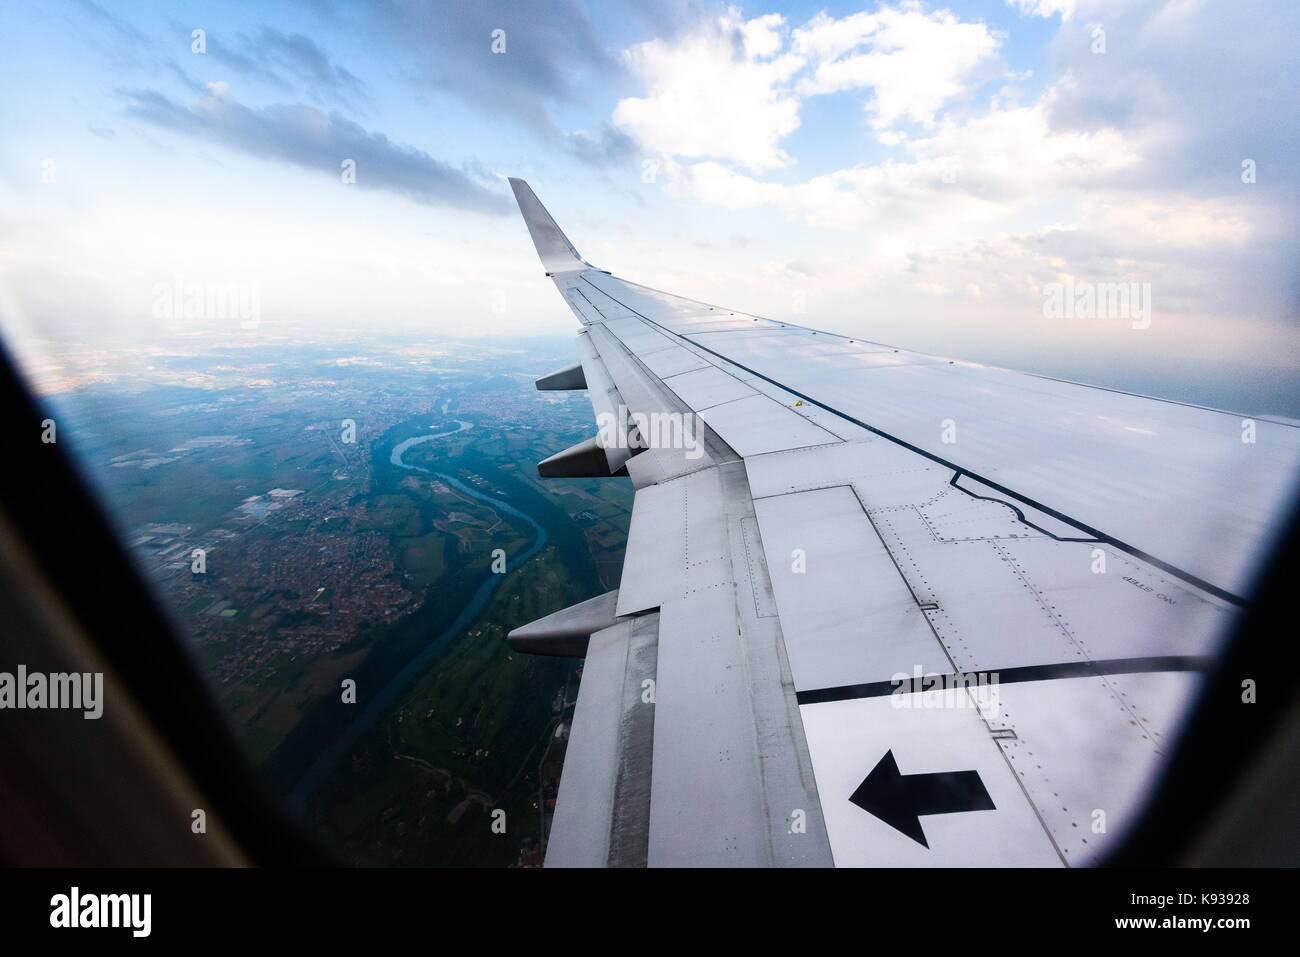 À la fenêtre de l'auge d'un aéronef, d'un avion ou d'aile d'avion. vue depuis la fenêtre de l'avion pendant l'atterrissage ou décollage sur la ville zone urbaine. Banque D'Images